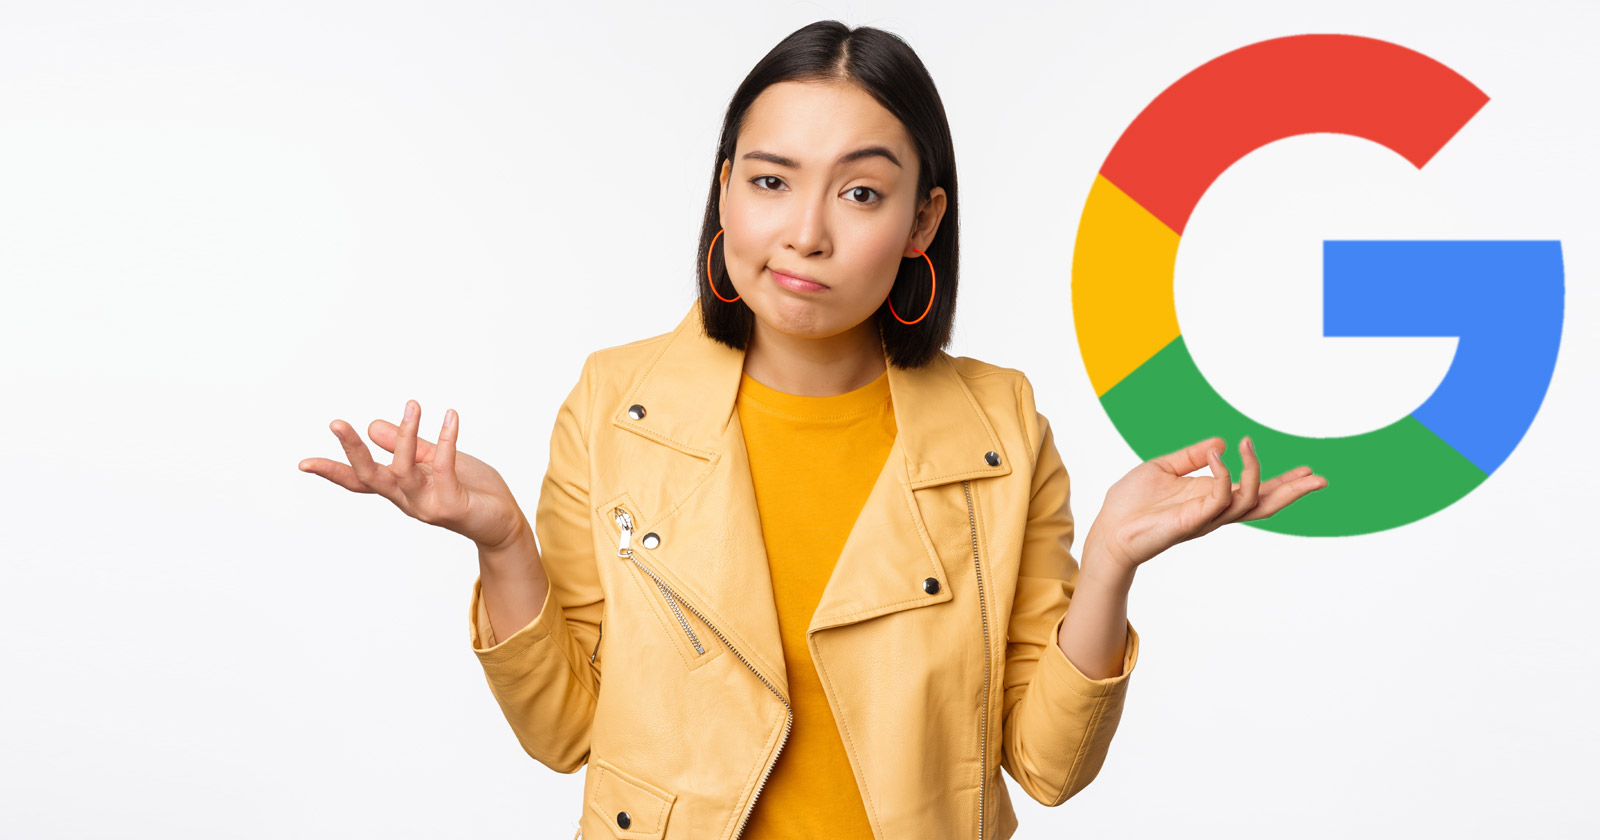 Google elimina la experiencia de búsqueda de empleo de los resultados de búsqueda de Corea del Sur